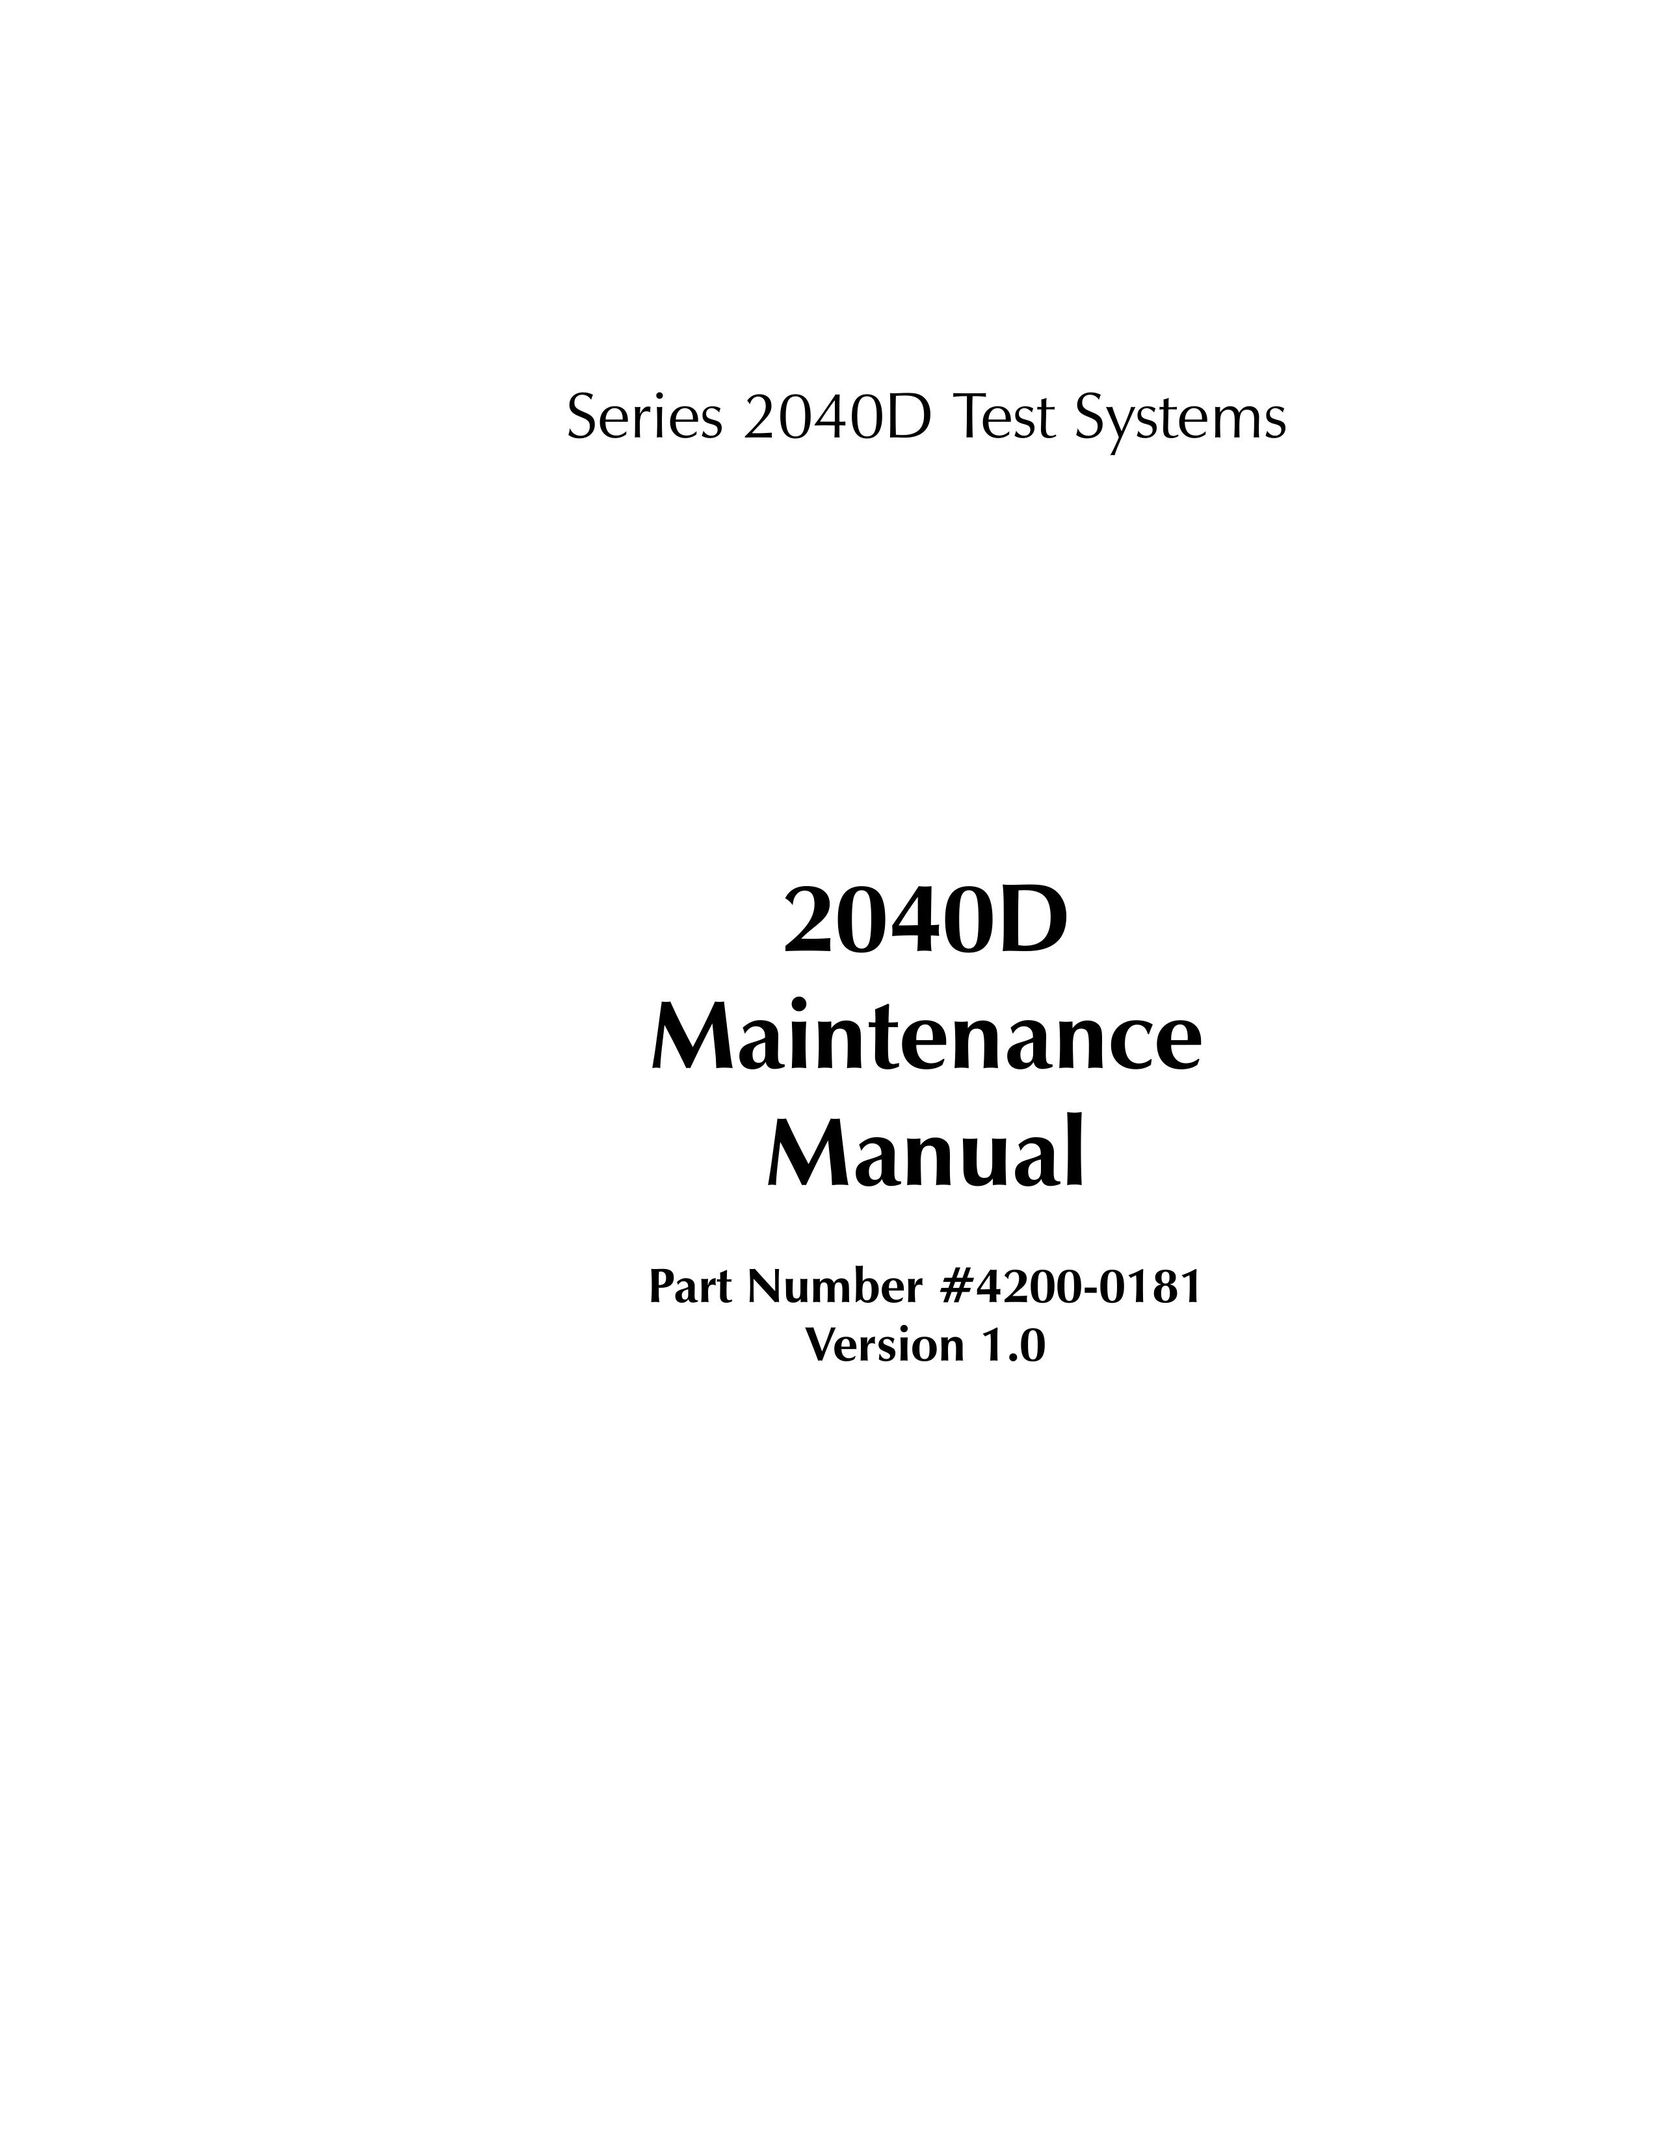 HP (Hewlett-Packard) 2040D Network Router User Manual